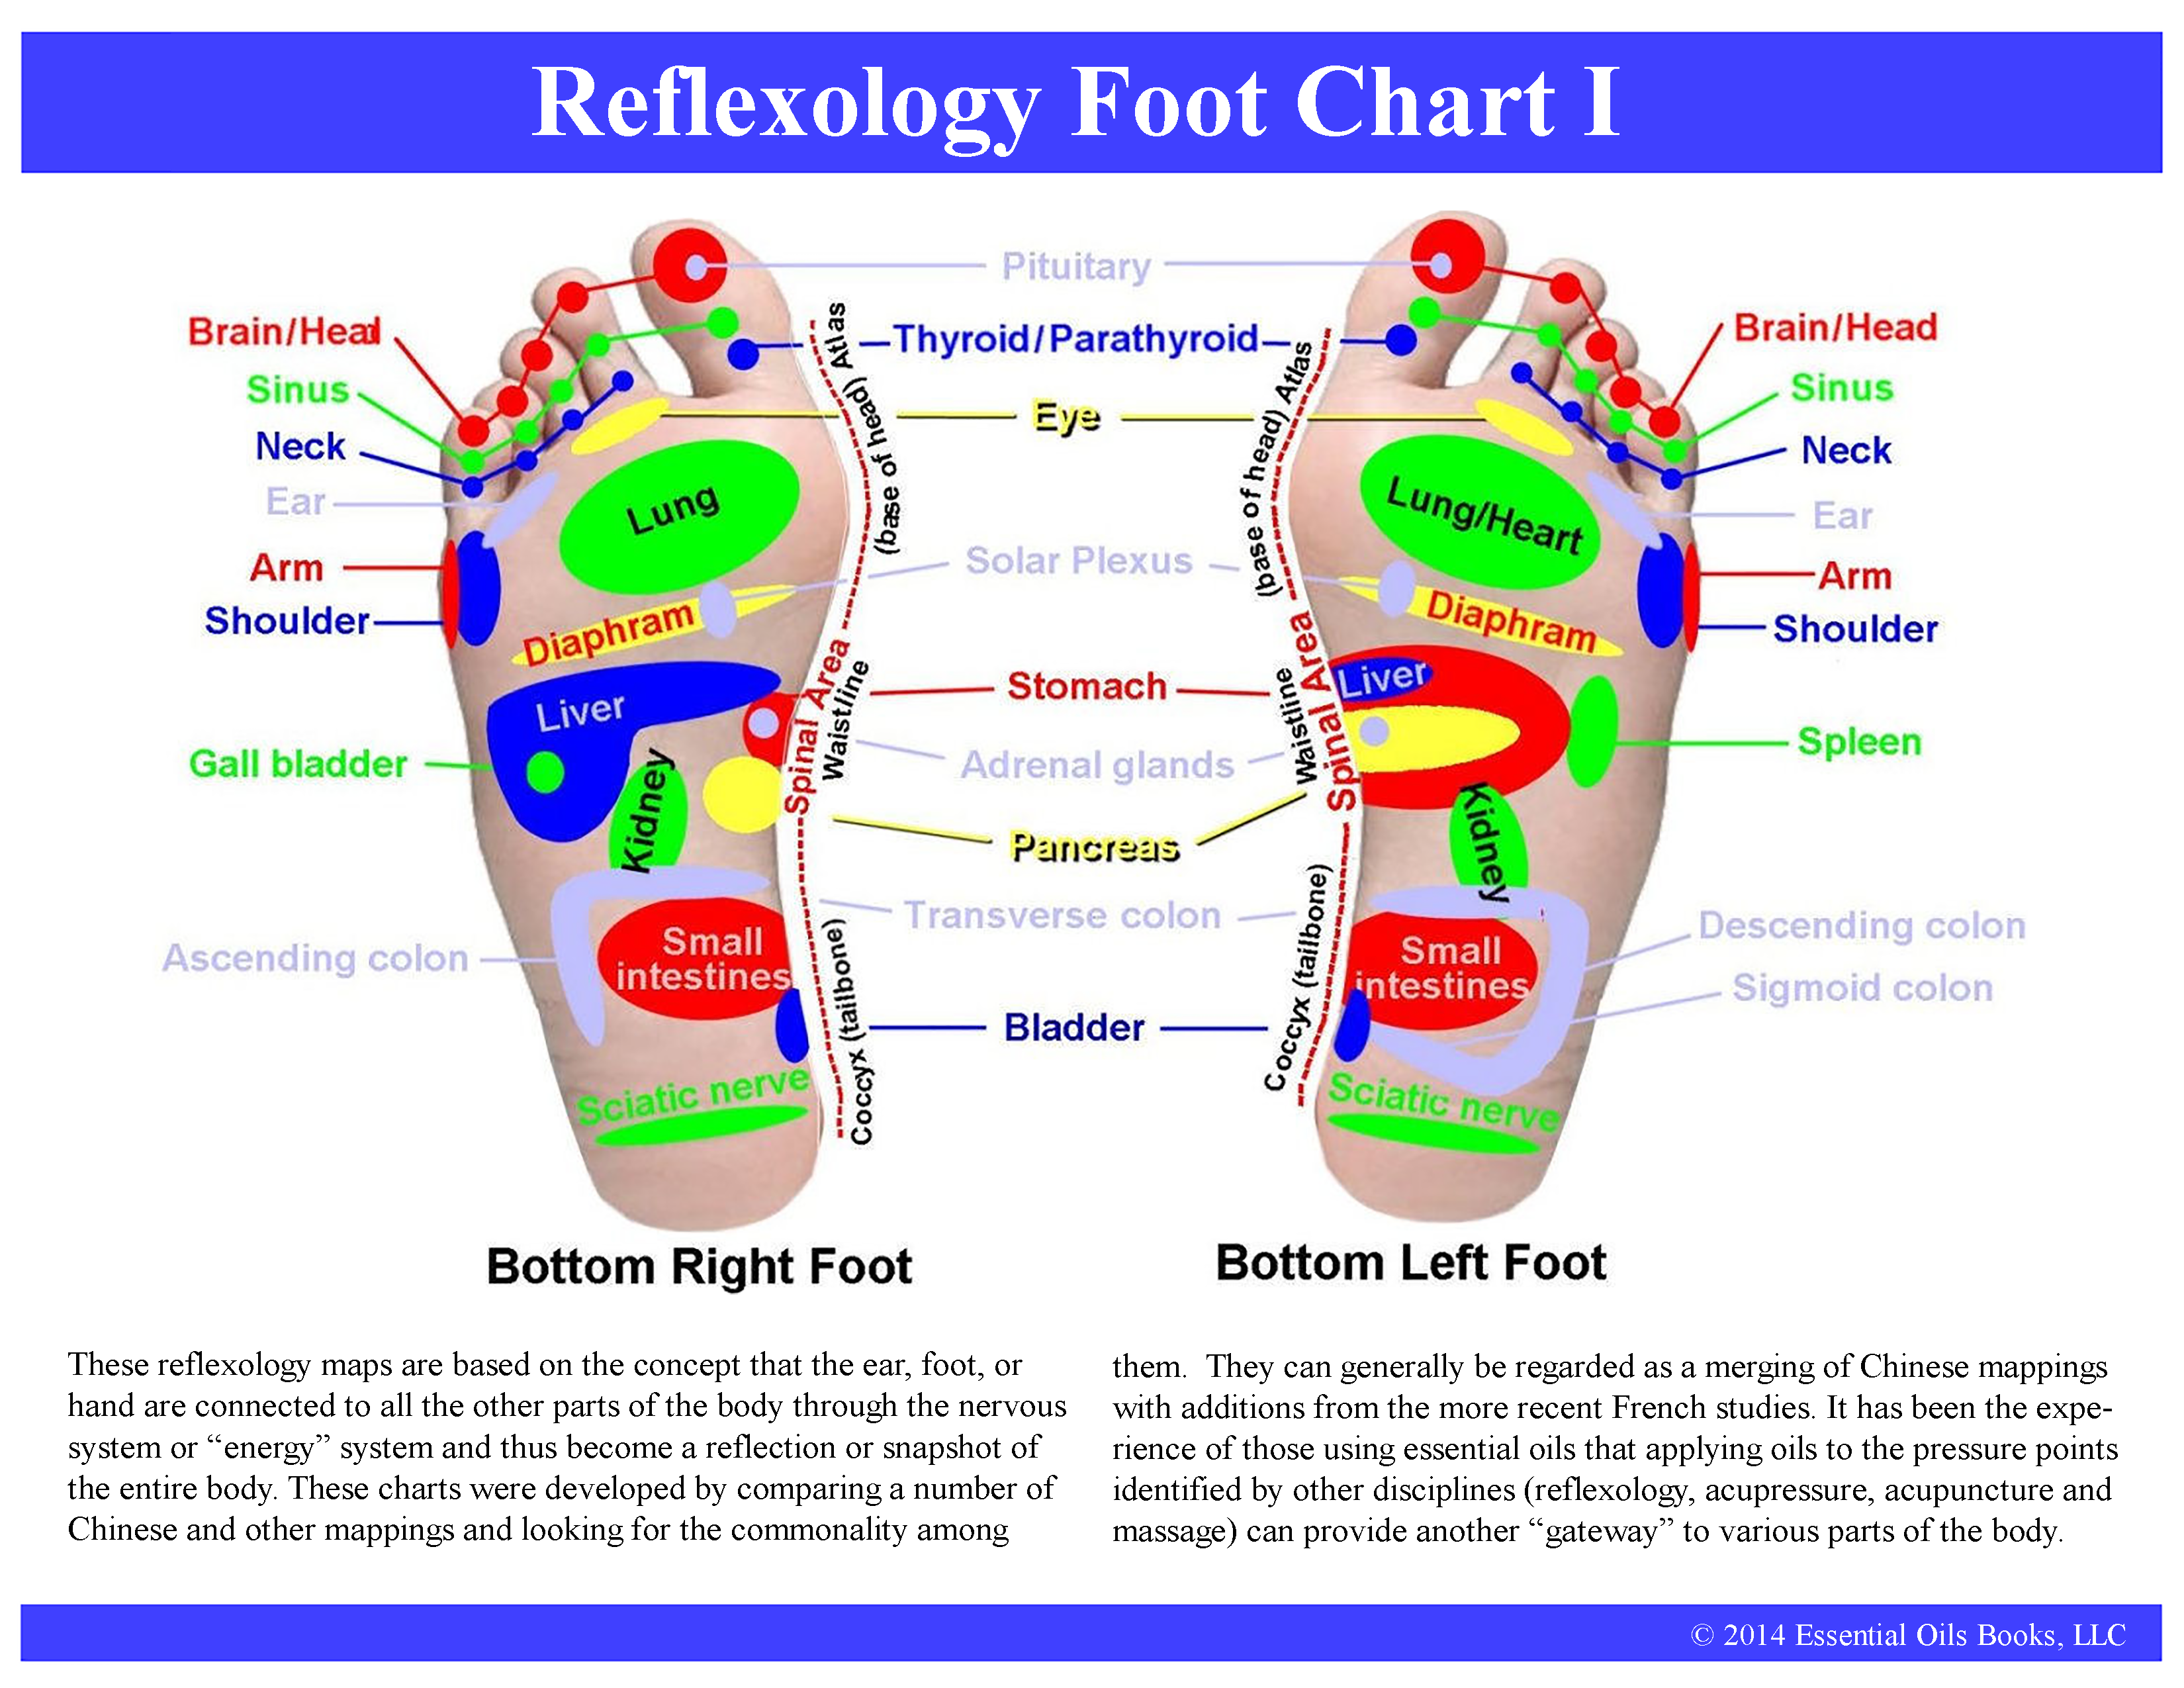 Reflexology Charts For Feet